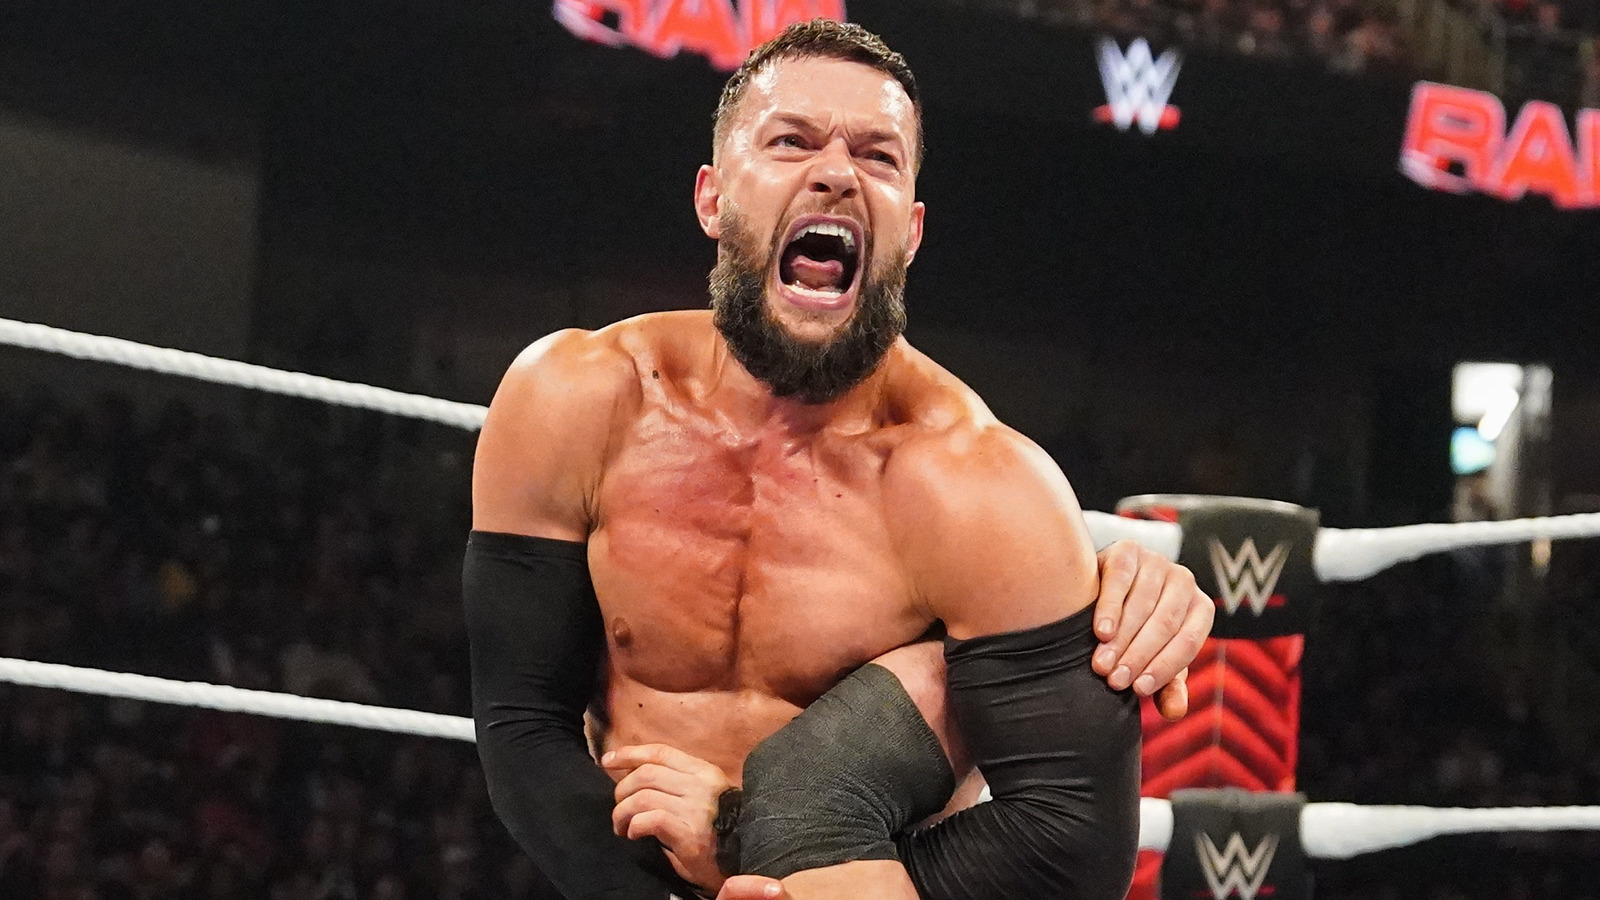 WWE's Finn Balor Explains Refusal To Compromise Integrity For Money & Fame